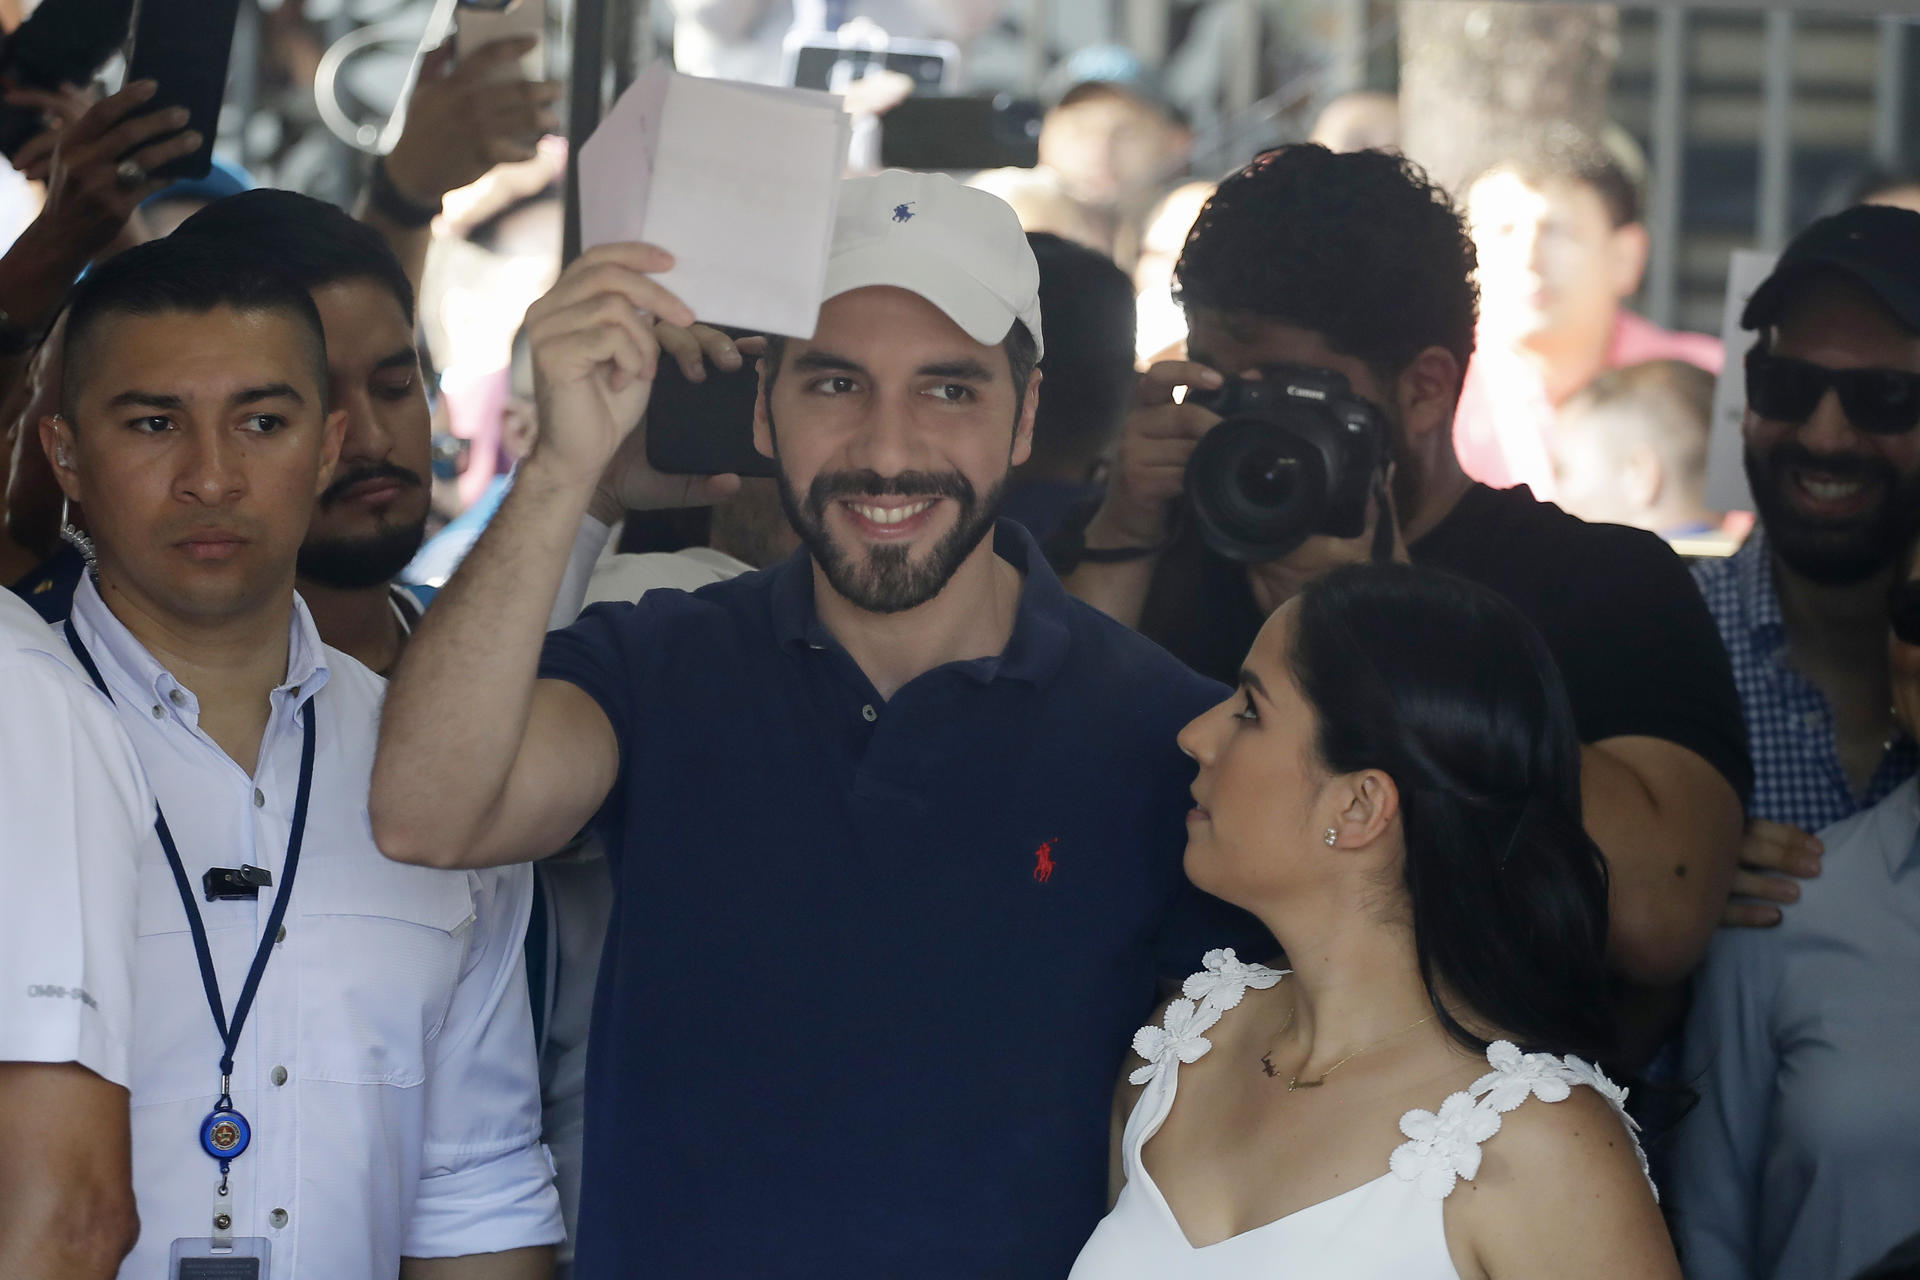 Bugel's party, Nuevas Ideas, won 28 mayoral seats in El Salvador.